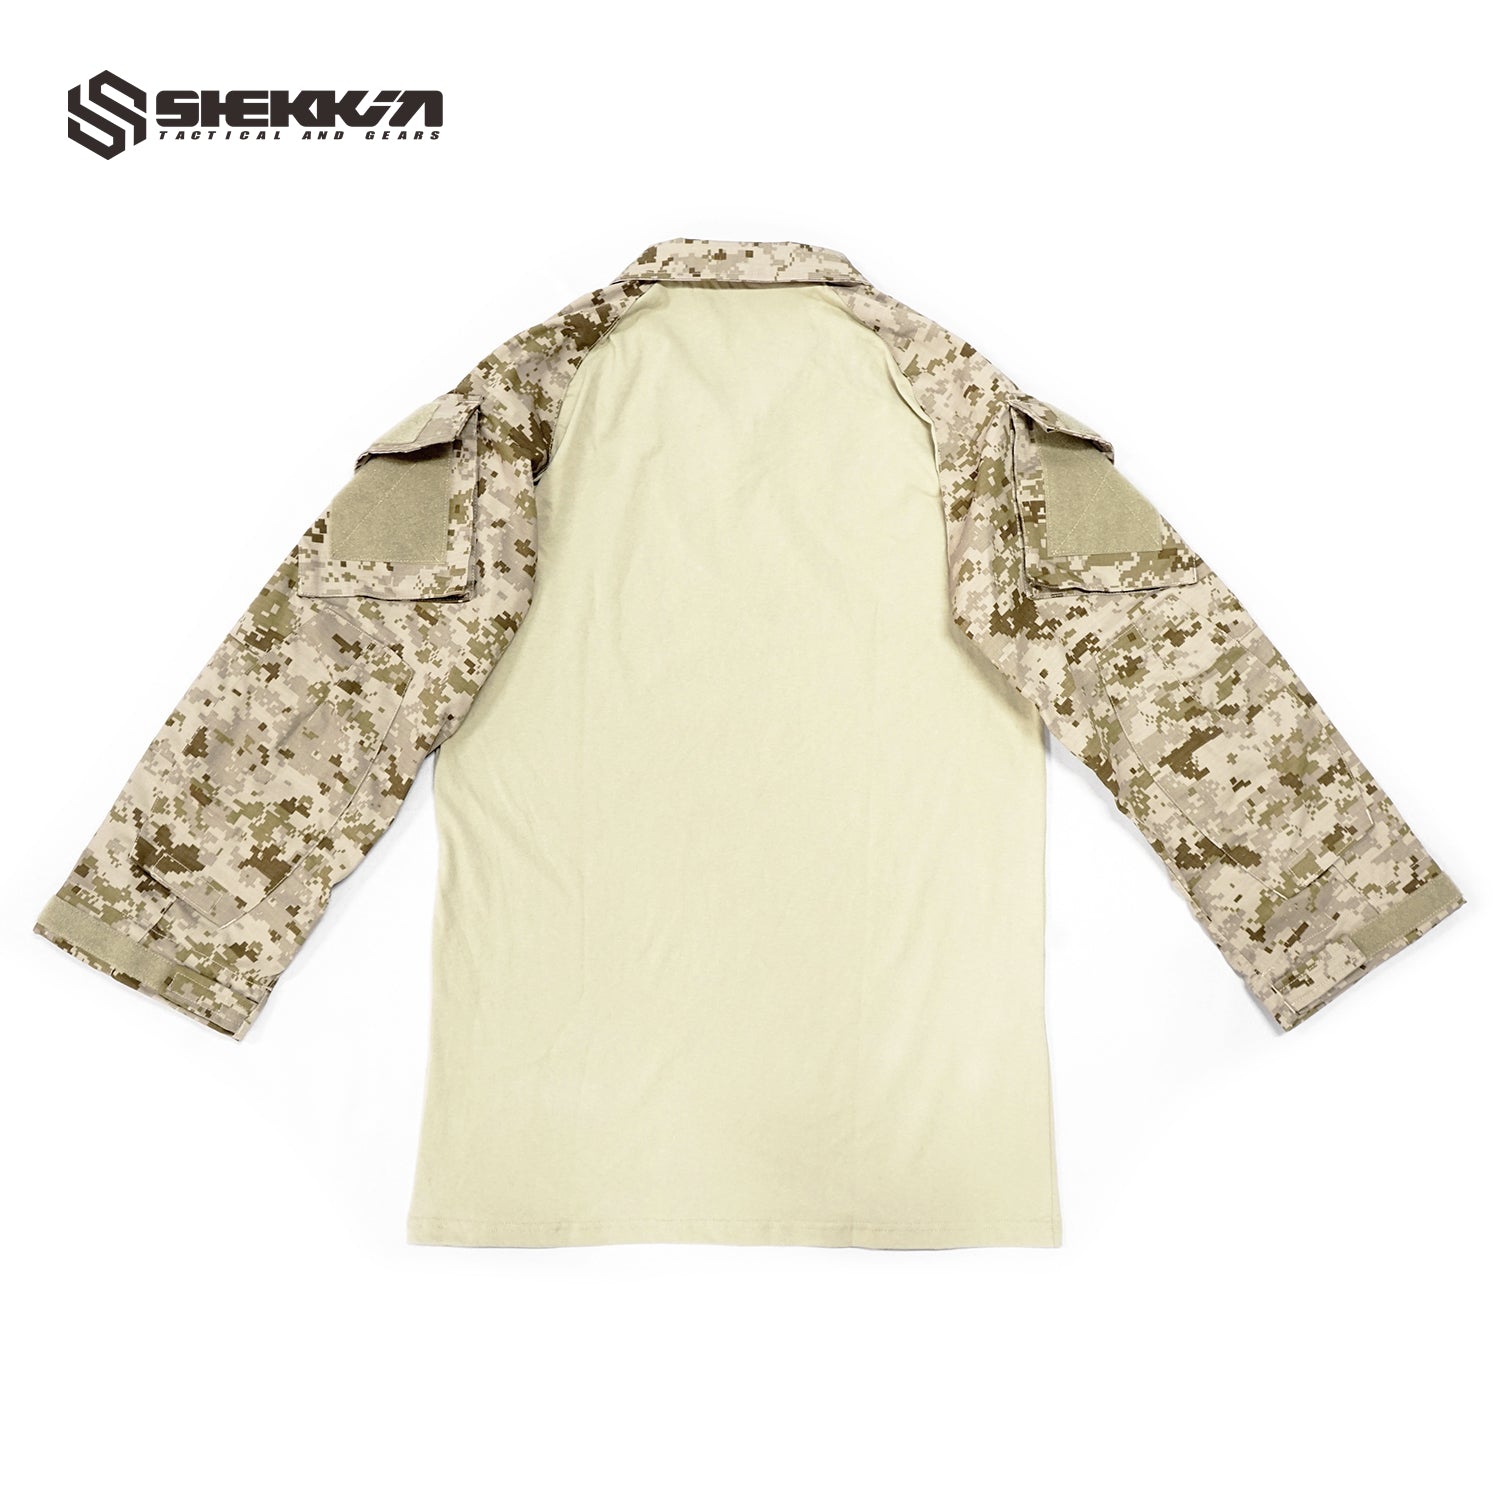 AOR1 Navy cut gen2 combat shirt - Shekkin Gears